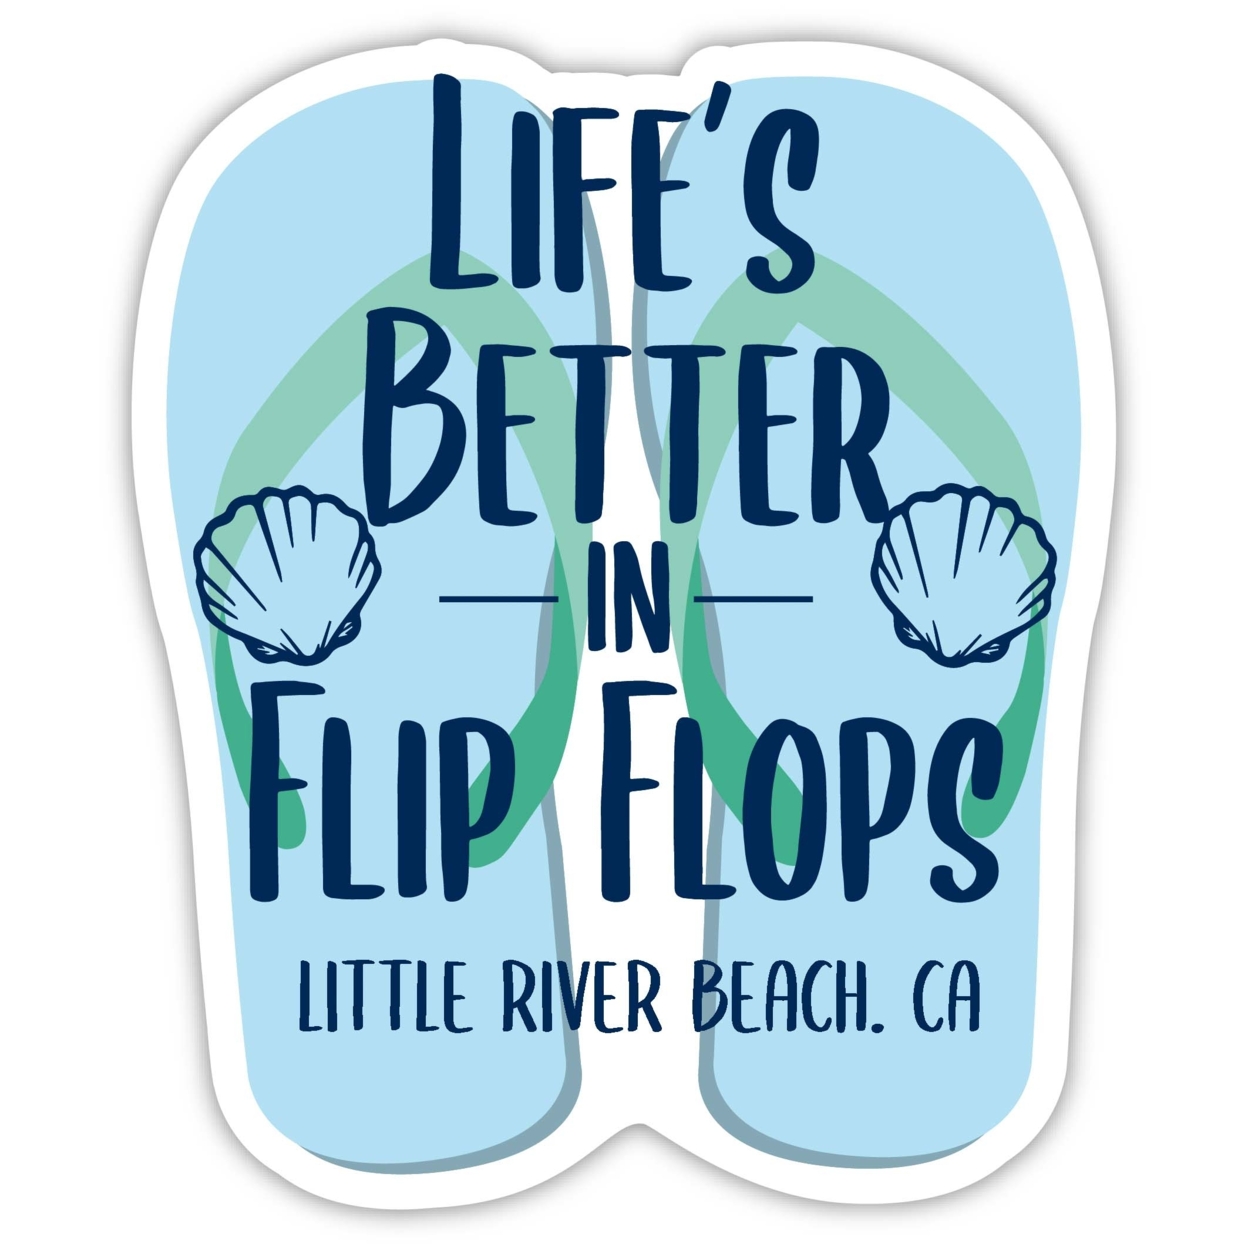 Little River Beach California Souvenir 4 Inch Vinyl Decal Sticker Flip Flop Design